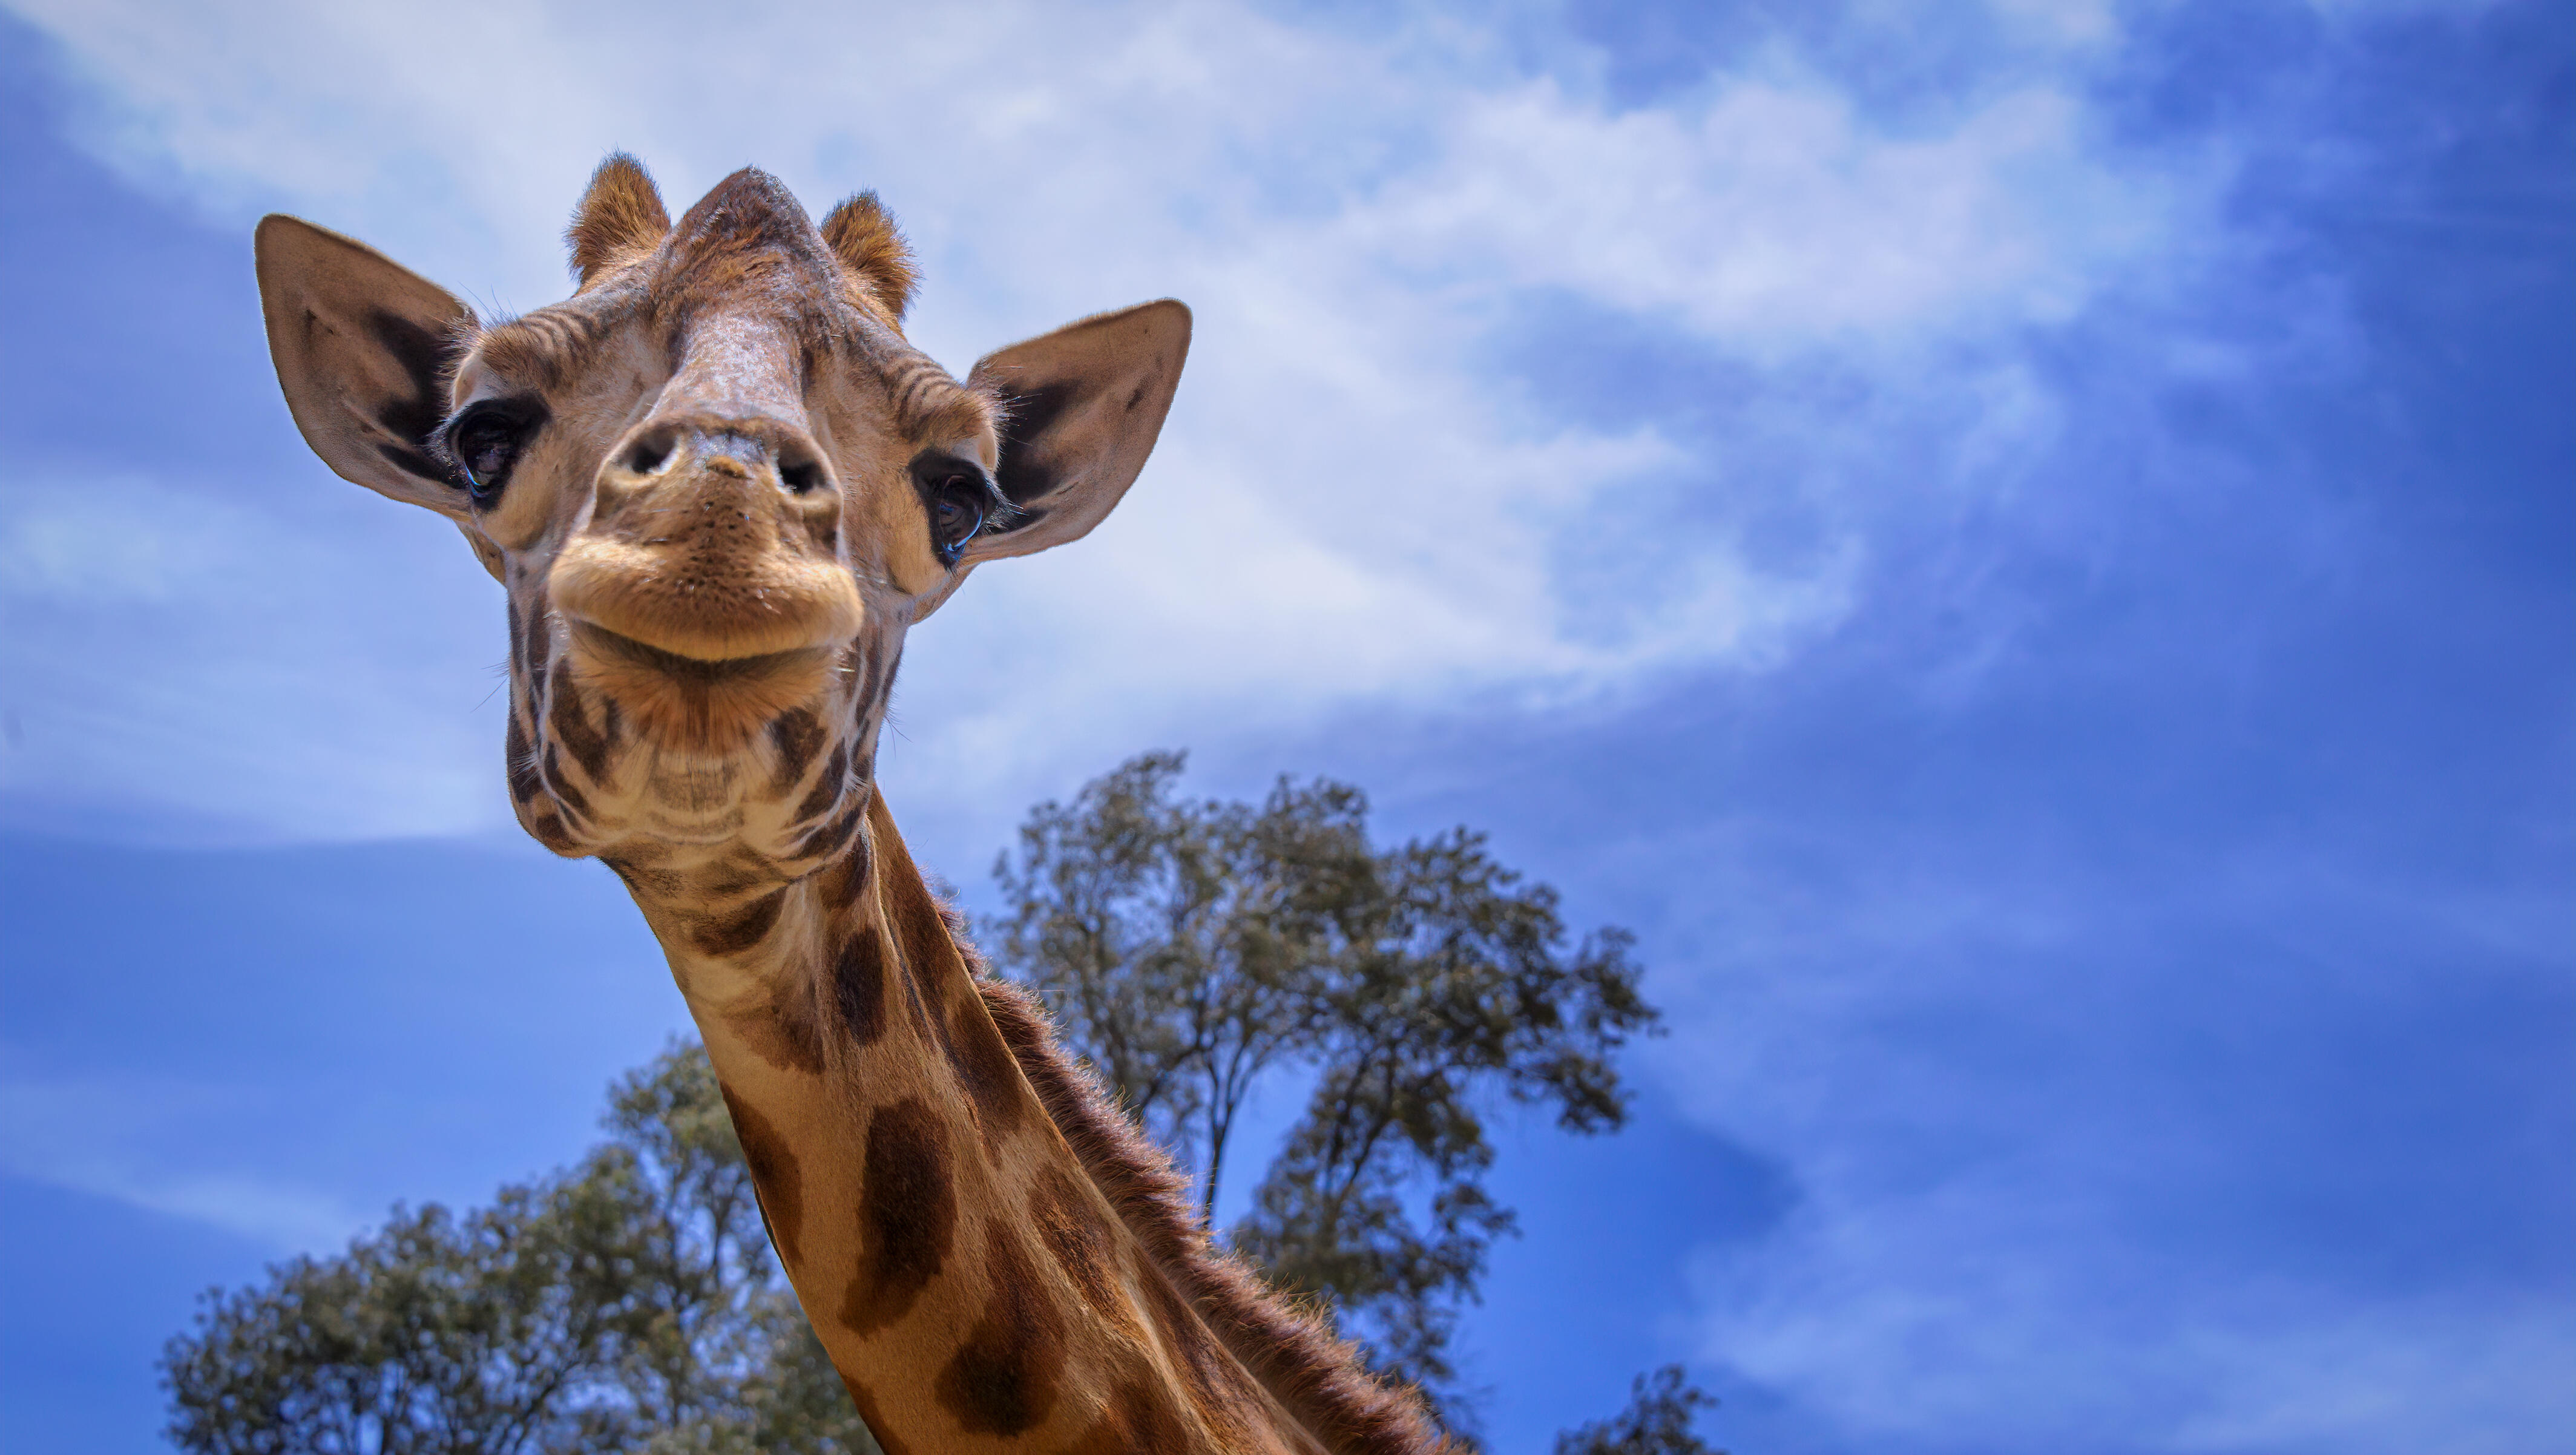 Toddler Grabbed, Picked Up by Giraffe at Drive-Thru Safari Park